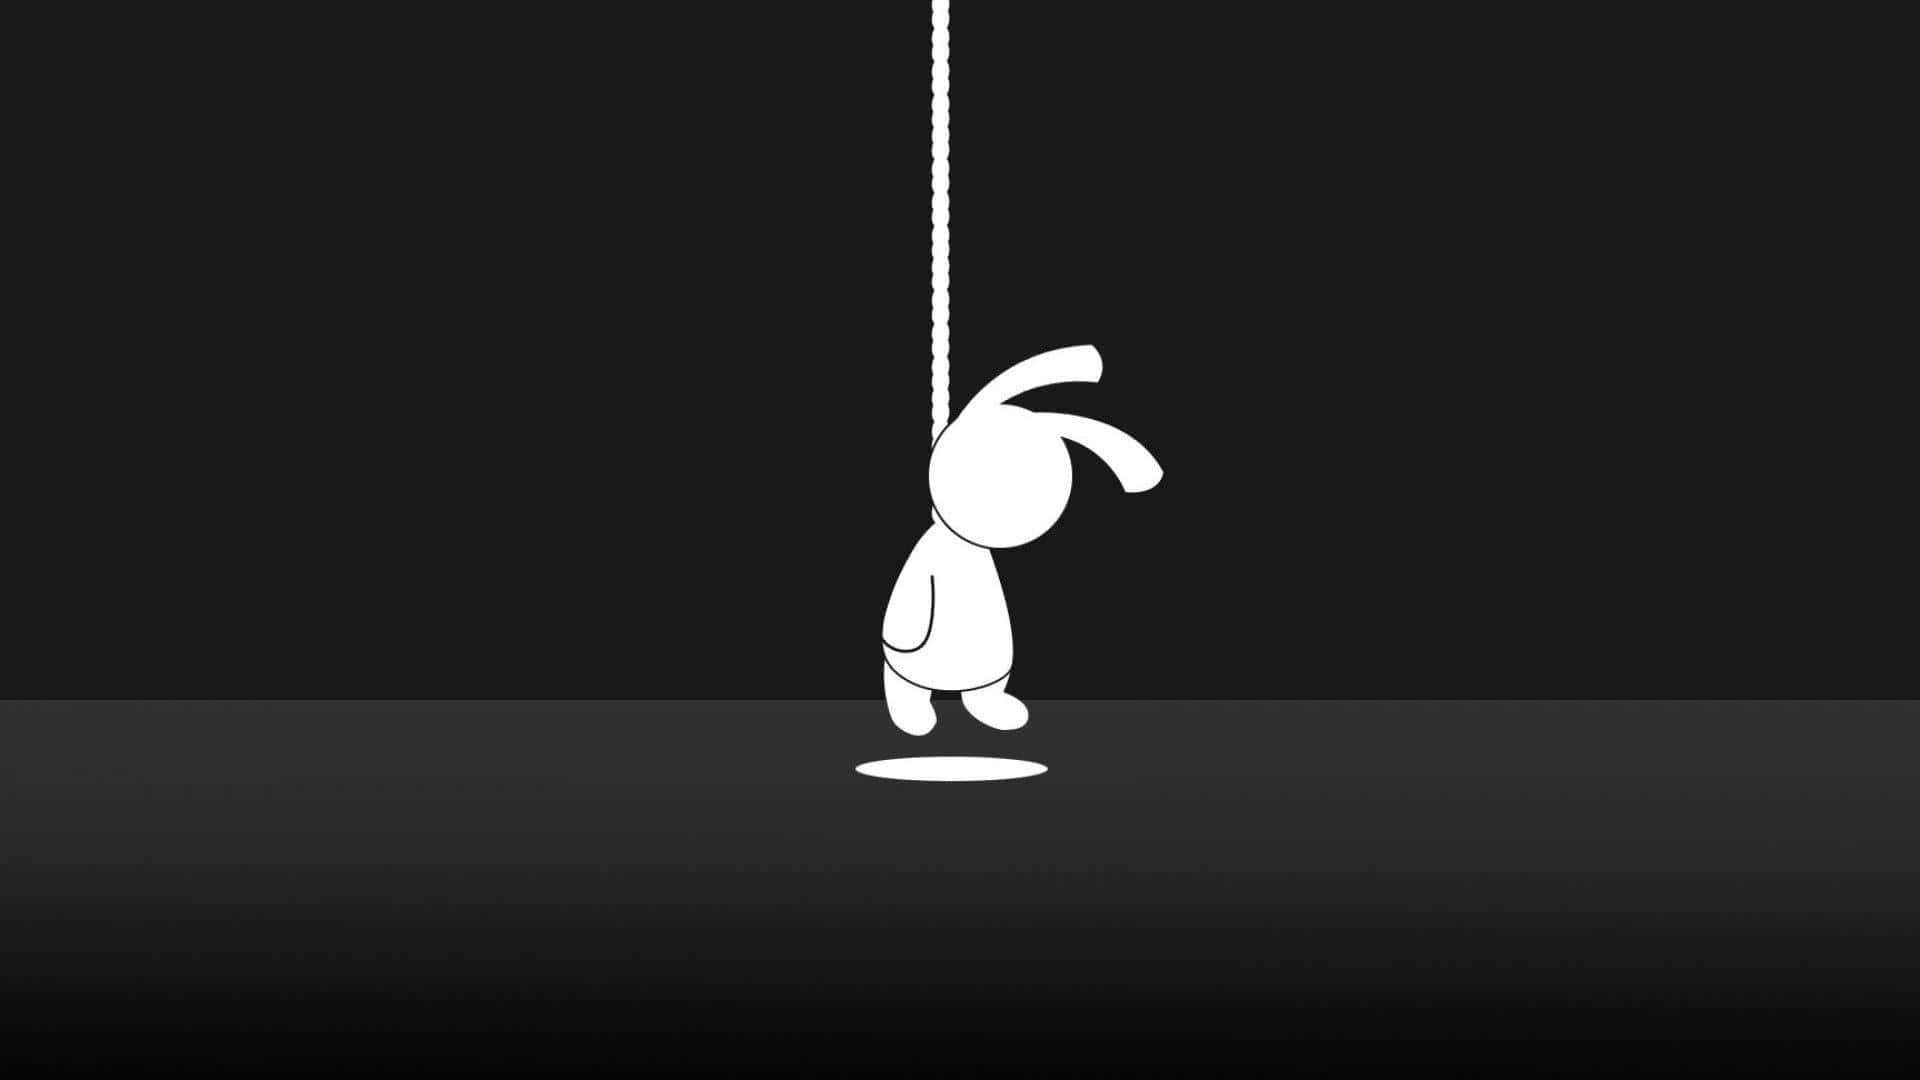 Einschwarz-weißes Bild Von Einem Kaninchen, Das An Einem Seil Hängt. Wallpaper